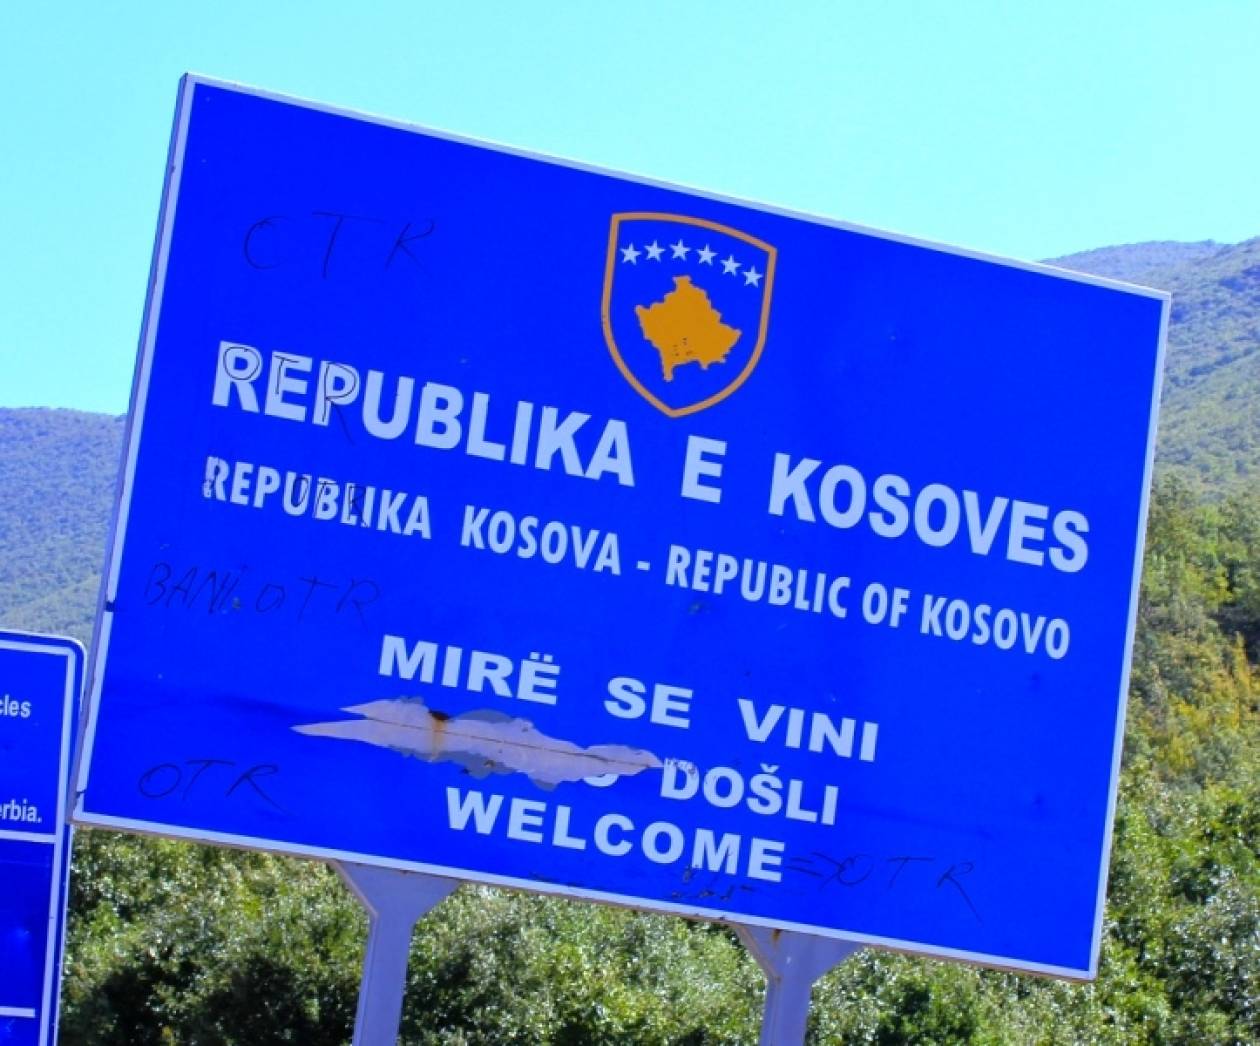 Αποτυχία στις συνομιλίες ανάμεσα σε Σερβία και Κοσσυφοπέδιο